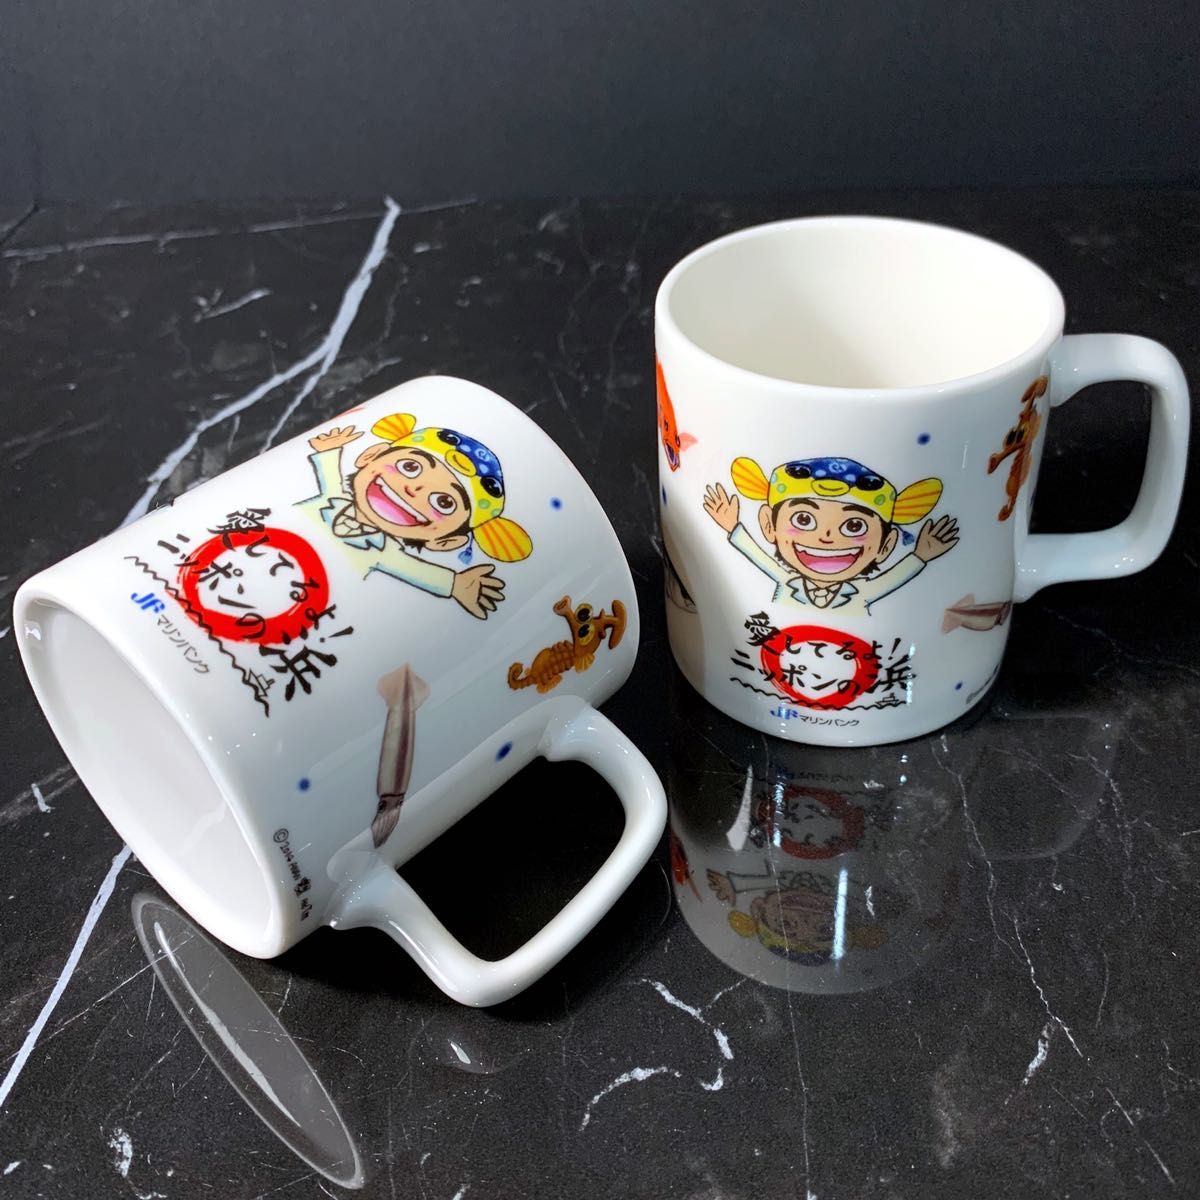 【 希少 入手困難 】 非売品 さかなクン JA マリンバンク マグカップ mug マグ カップ コップ